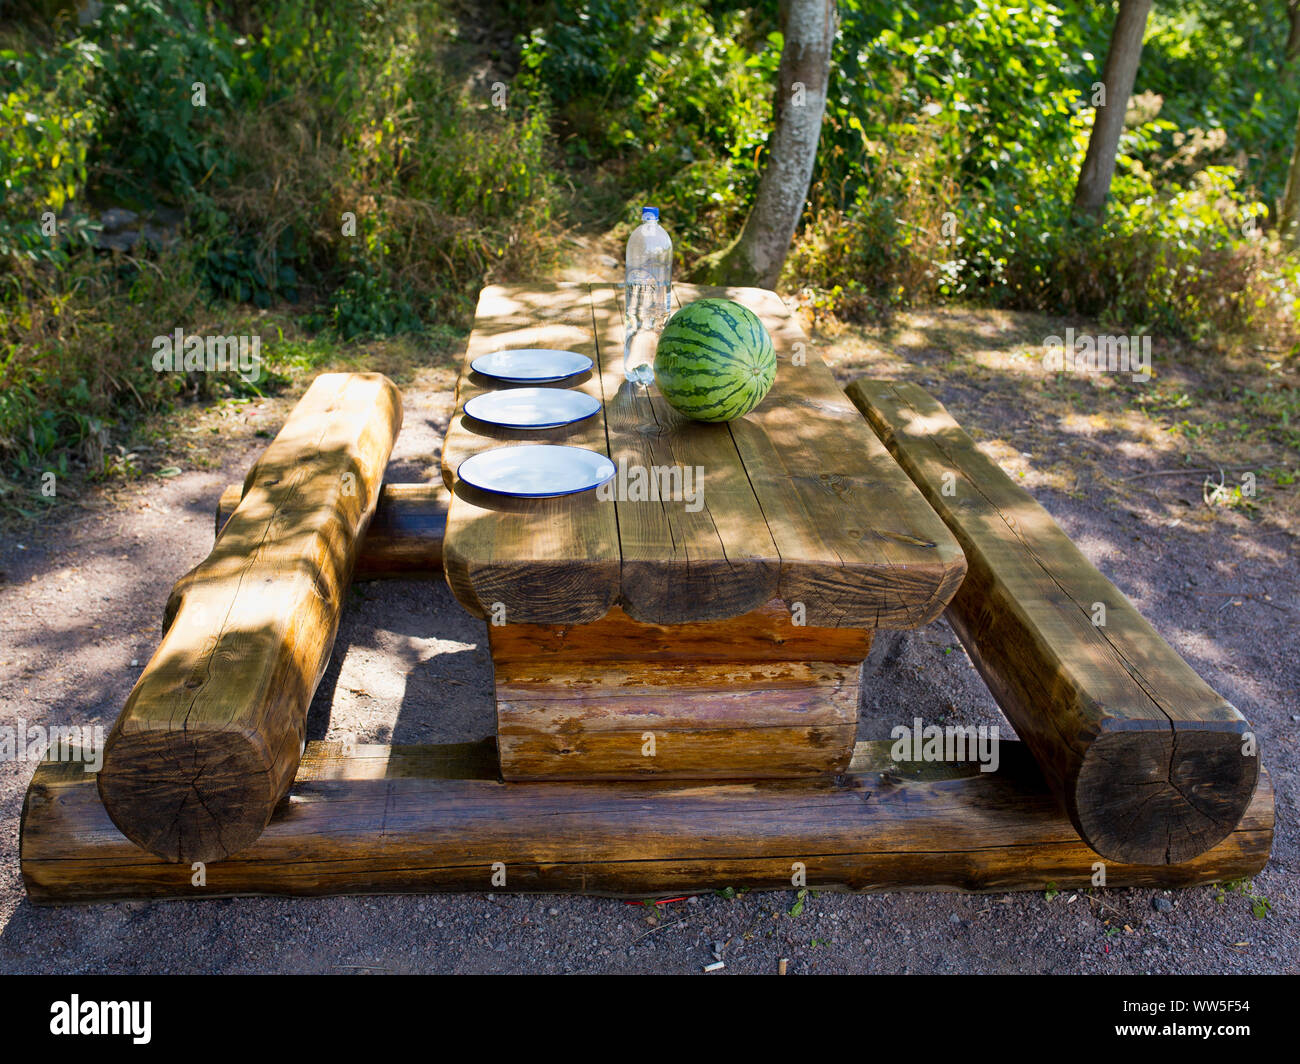 Di cui tavolo in legno con panca in legno con tre piastre e un melone verde Foto Stock